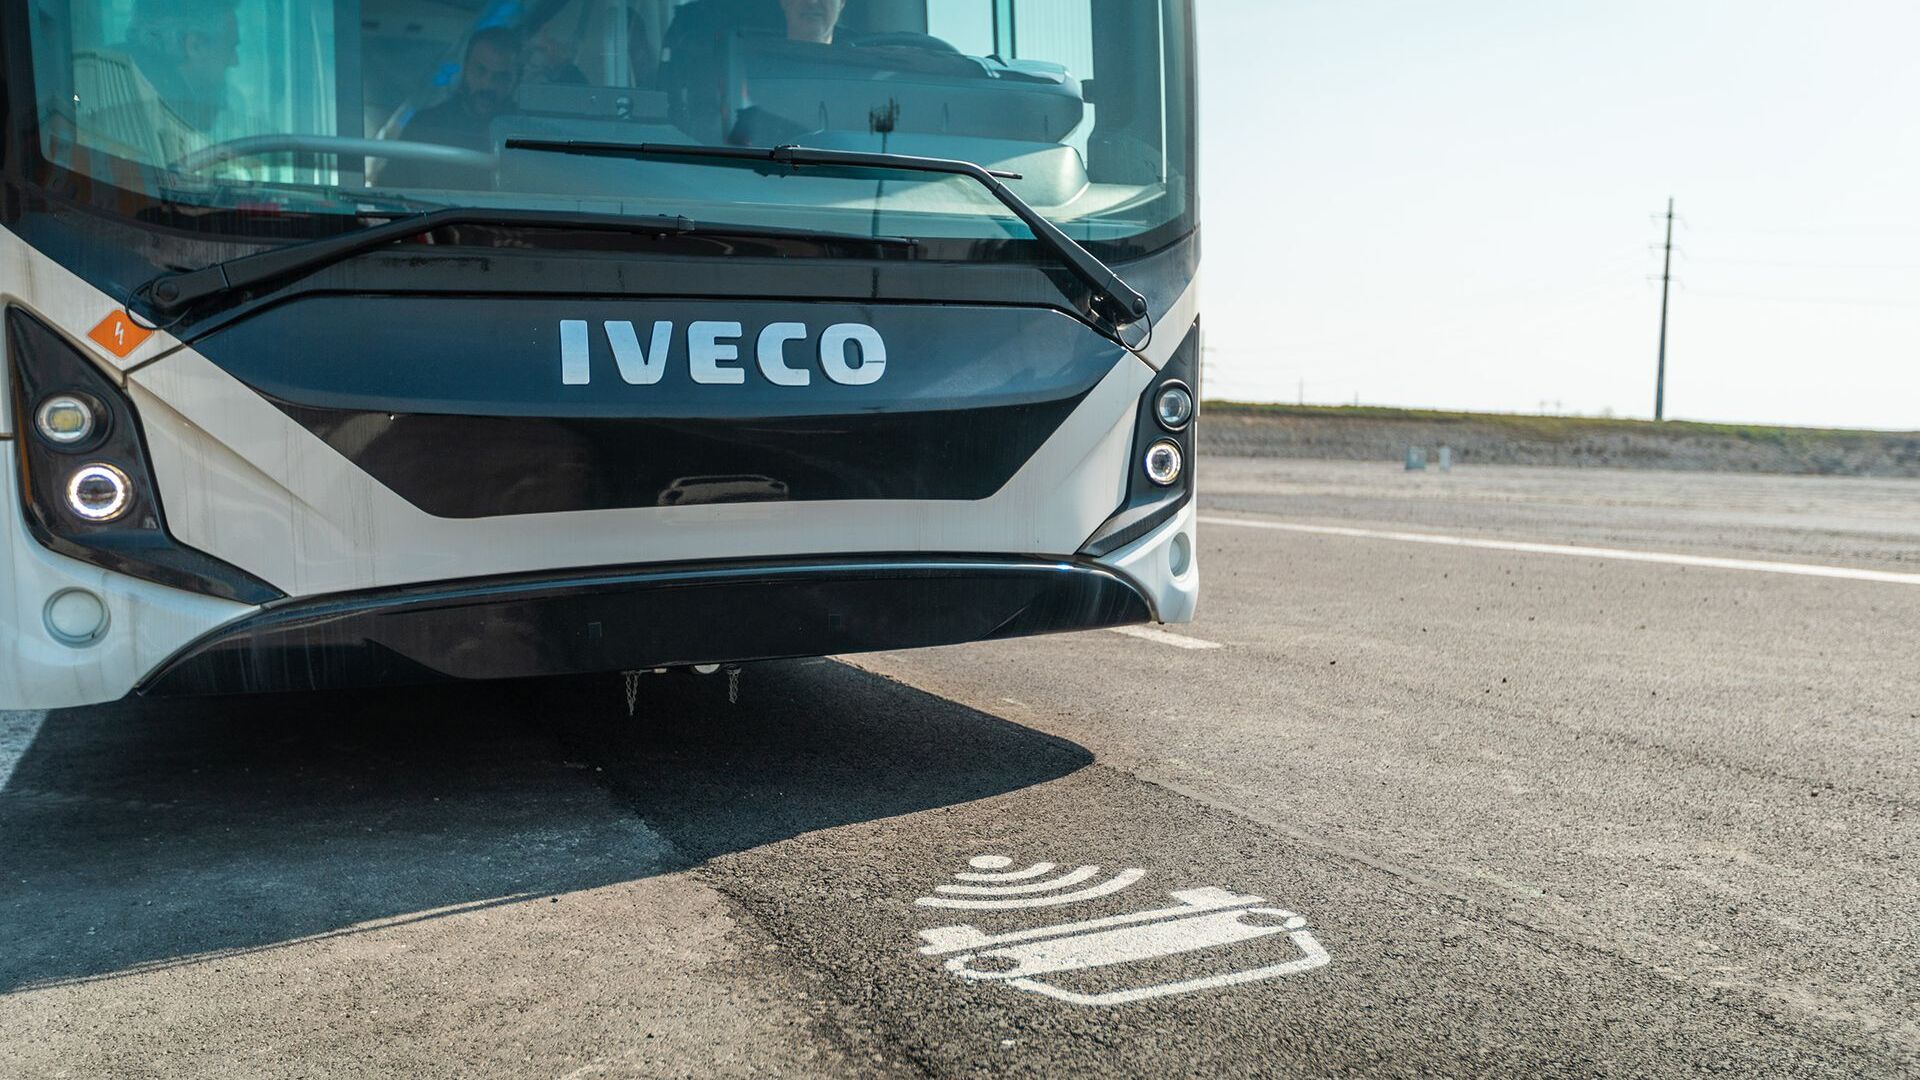 Тестови електричног аутобуса Ивецо у „Арени будућности“ у Кјарију, у Ломбардској провинцији Бреша: то је иновативно кружно коло, у близини аутопута БРЕБЕМИ А35, на којем се тестира индукционо пуњење електричних возила, која путују наменским тракама испод којих су постављени калемови